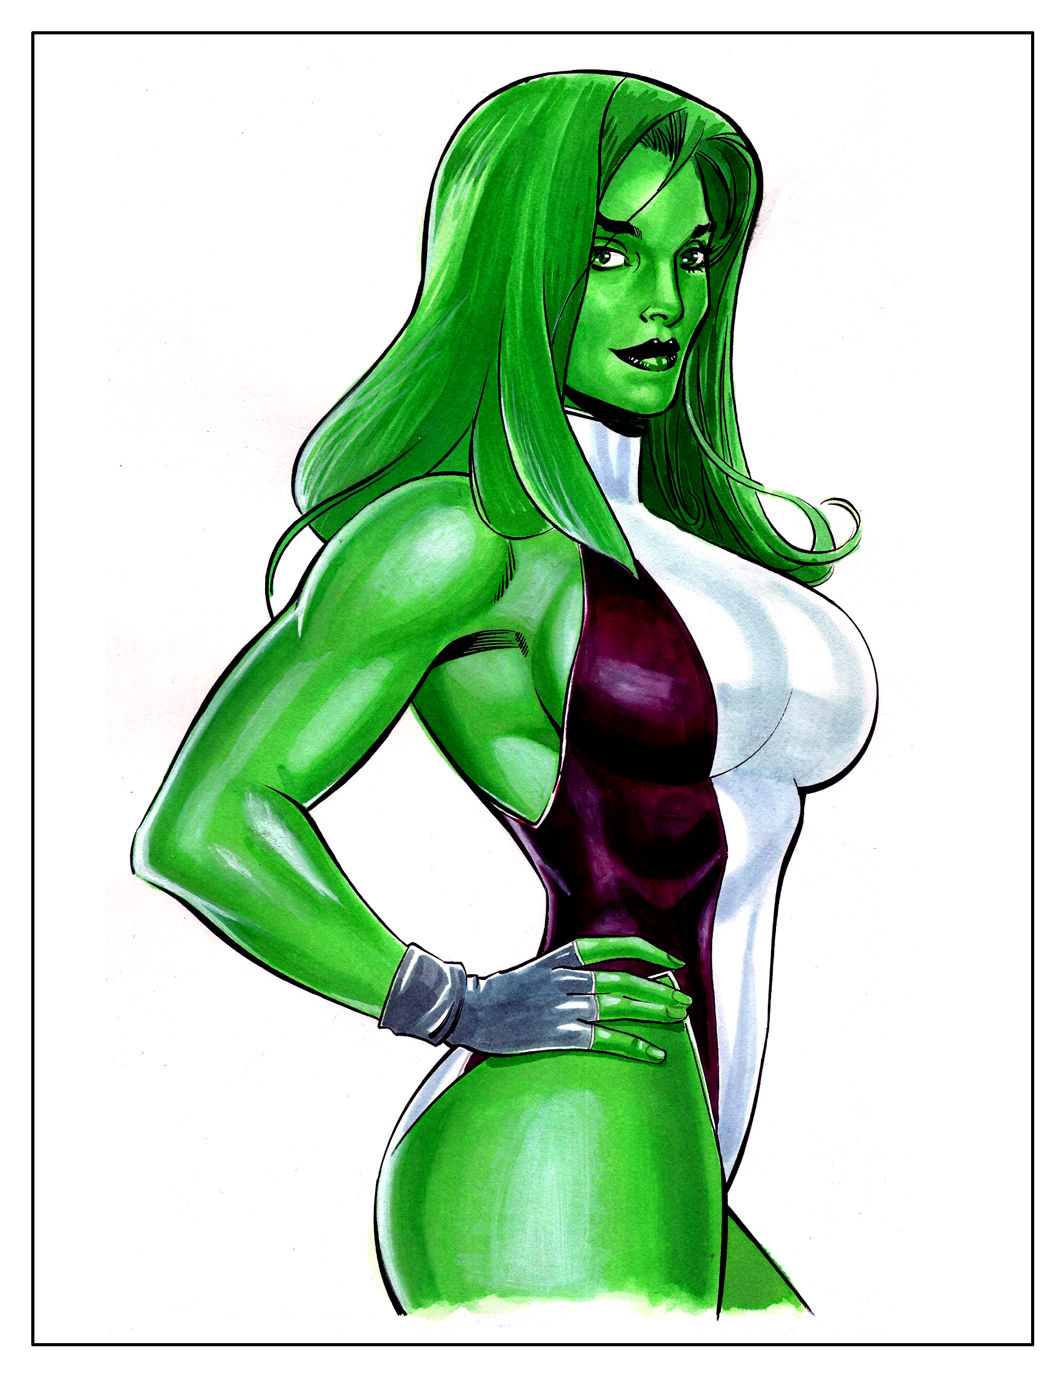 She hulk thread.